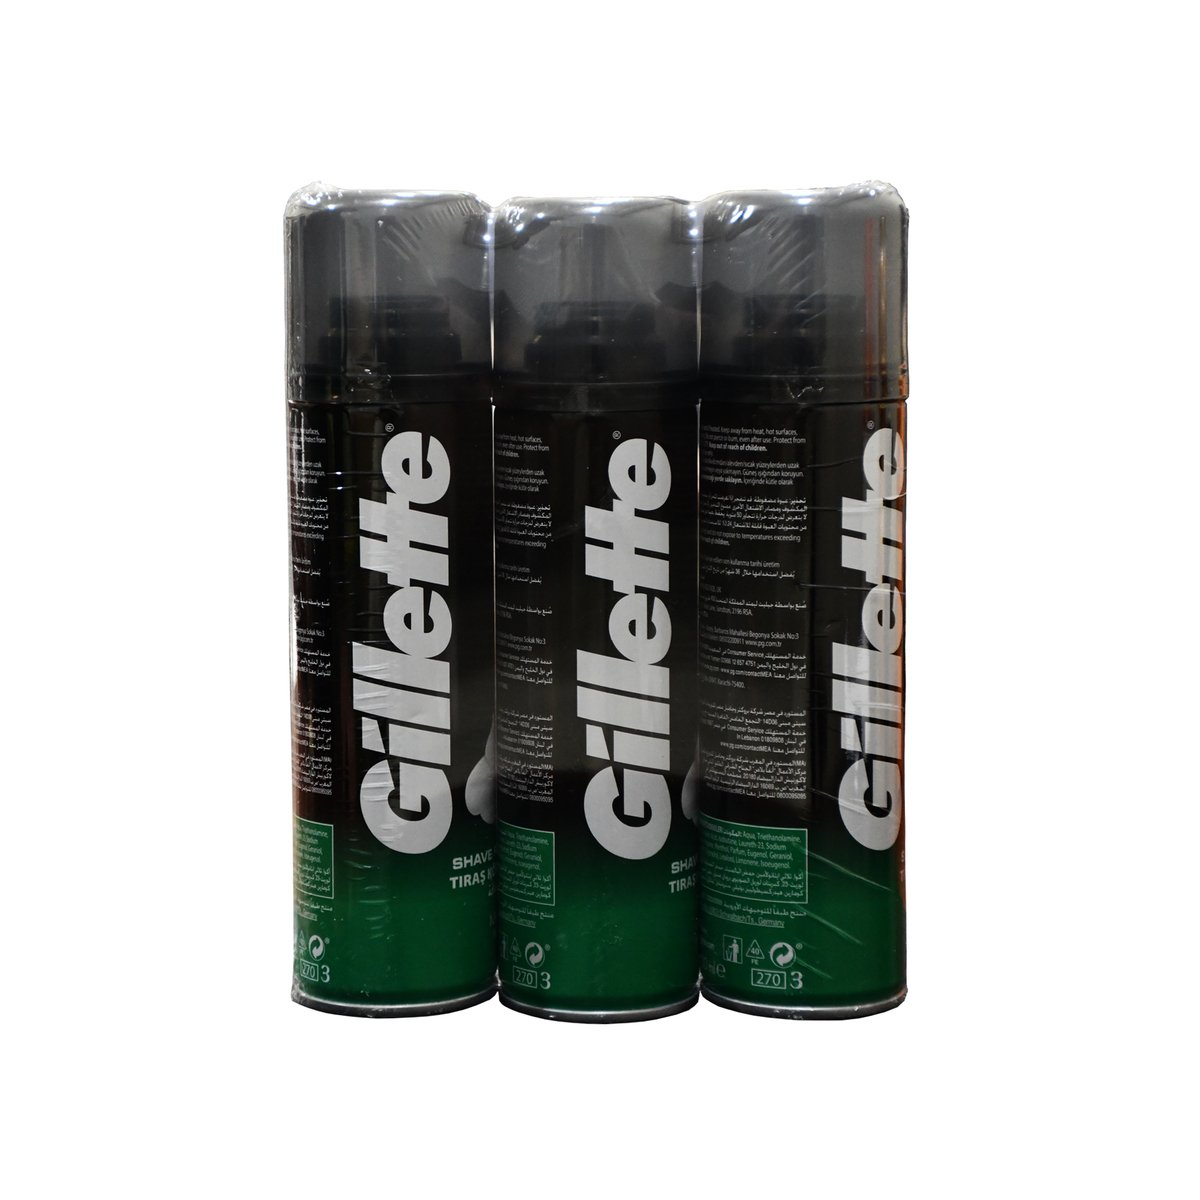 Gillette Shaving Foam 200ml 2 + 1